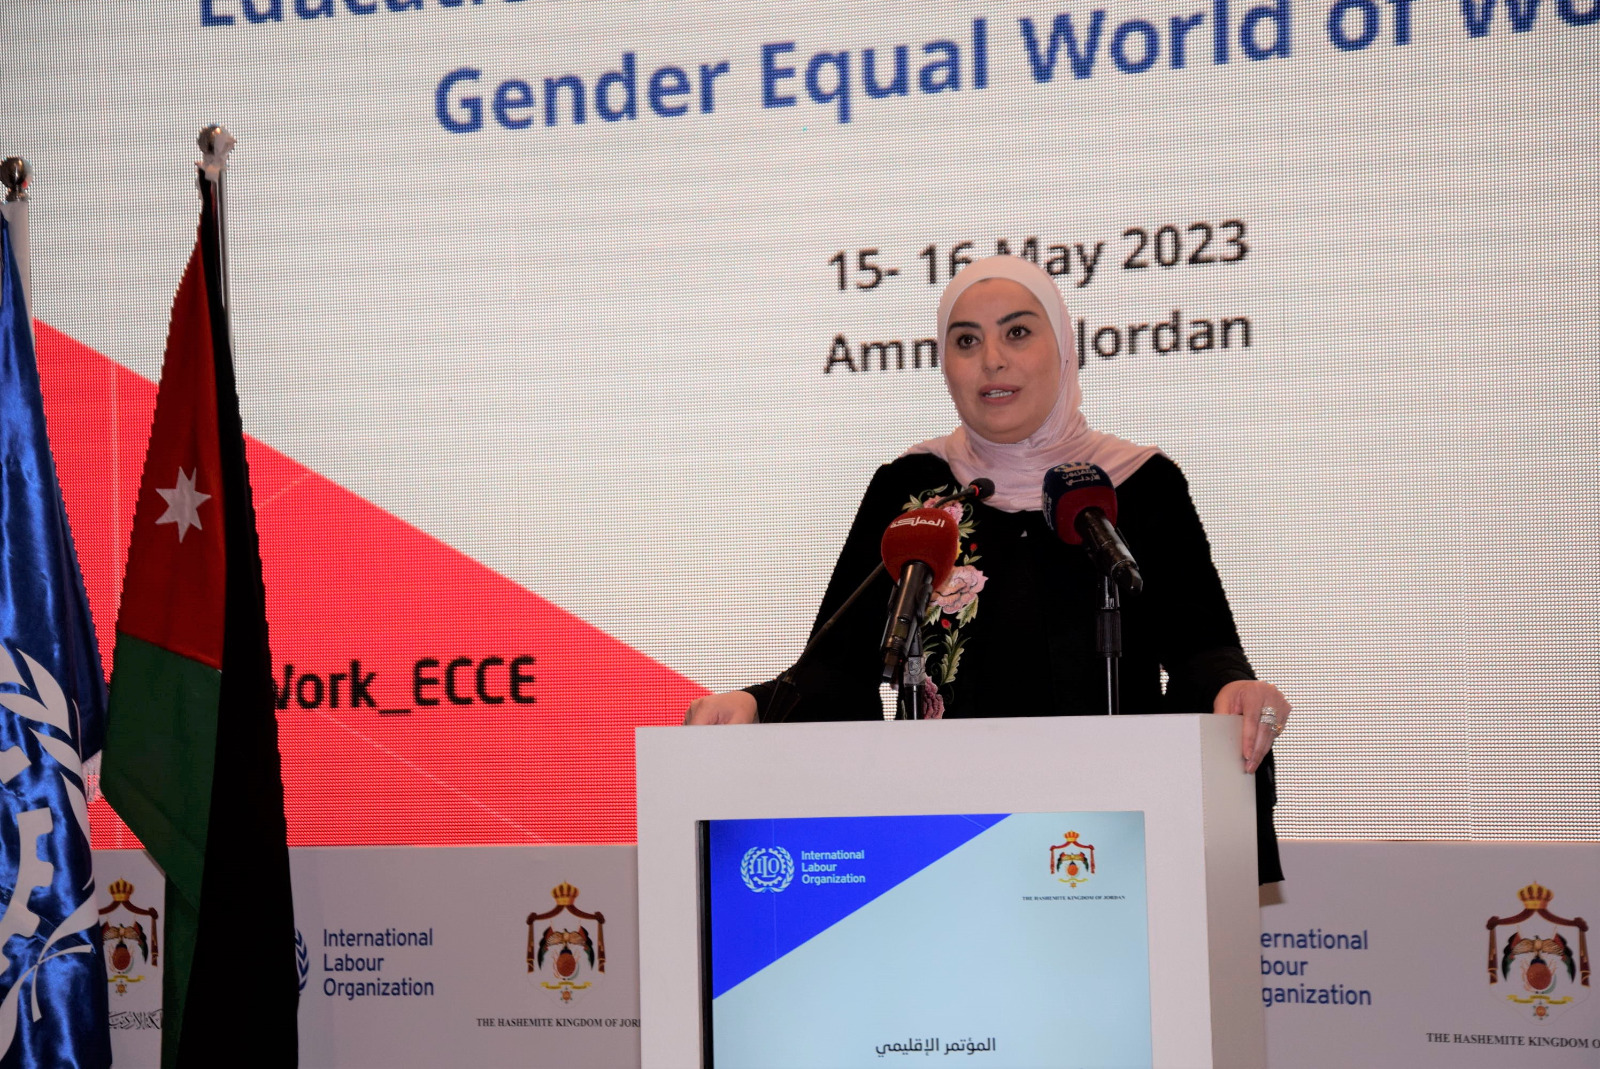 وزيرة التنمية ترعى أعمال مؤتمر الاستثمار في رعاية وتعليم الطفولة المبكرة من أجل عالم عمل أكثر مساواة بين الجنسين